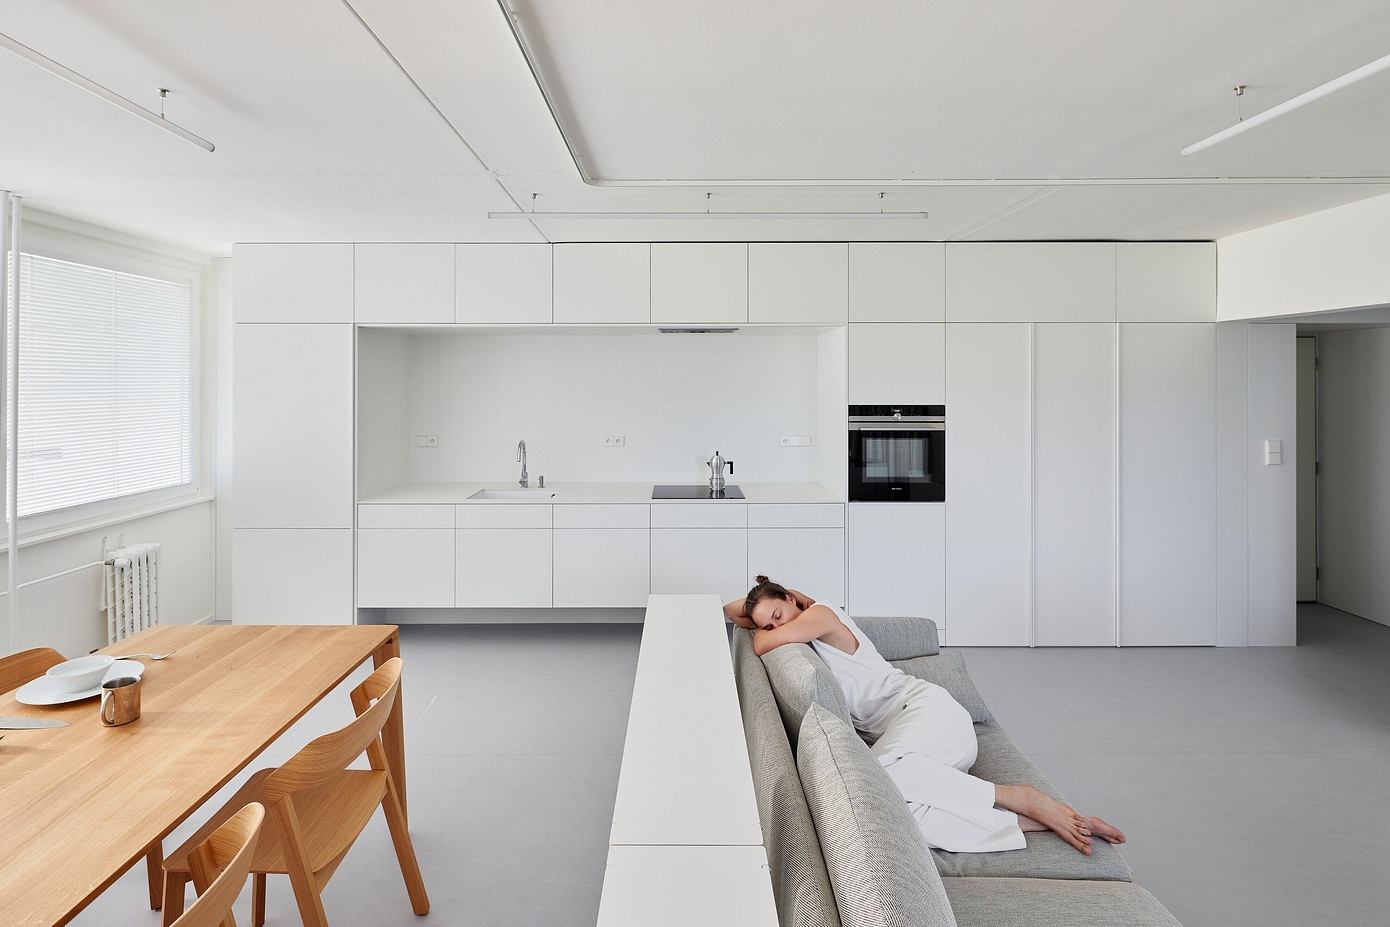 Mlékárenská Apartment: Minimalist Design Meets Functionality